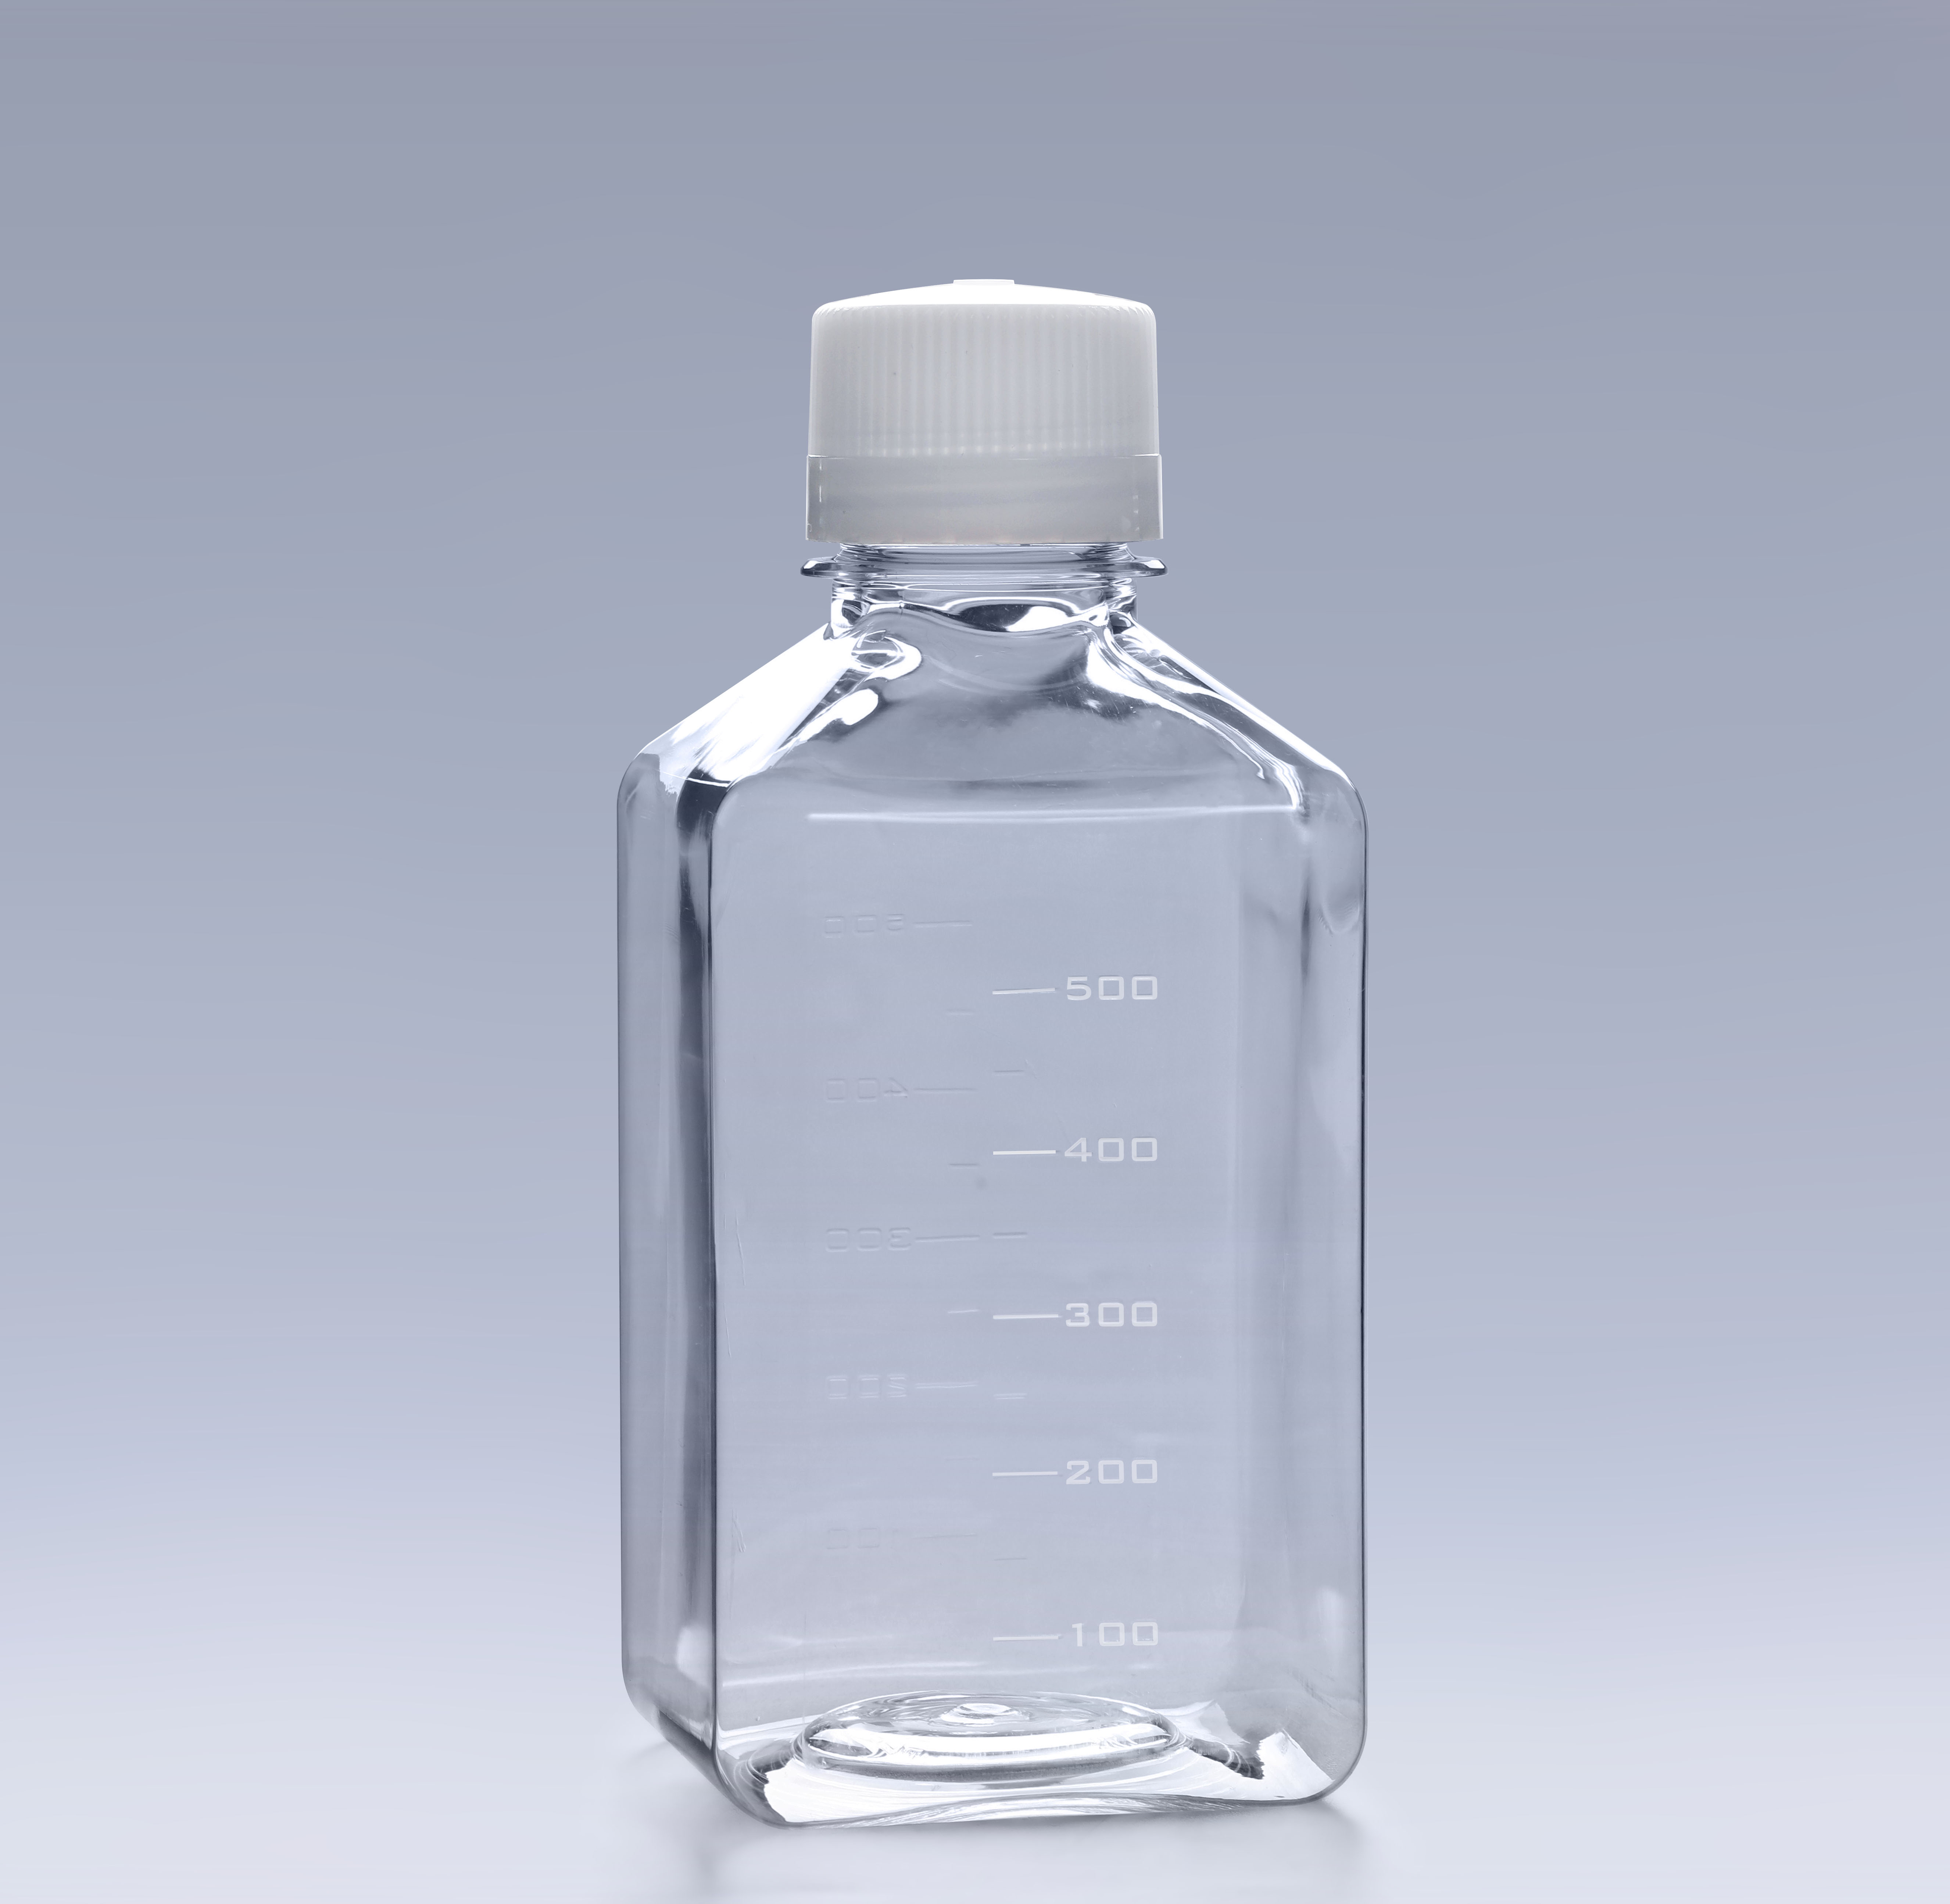 PETG血清瓶是影响血清质量的因素之一_v8娱乐细胞